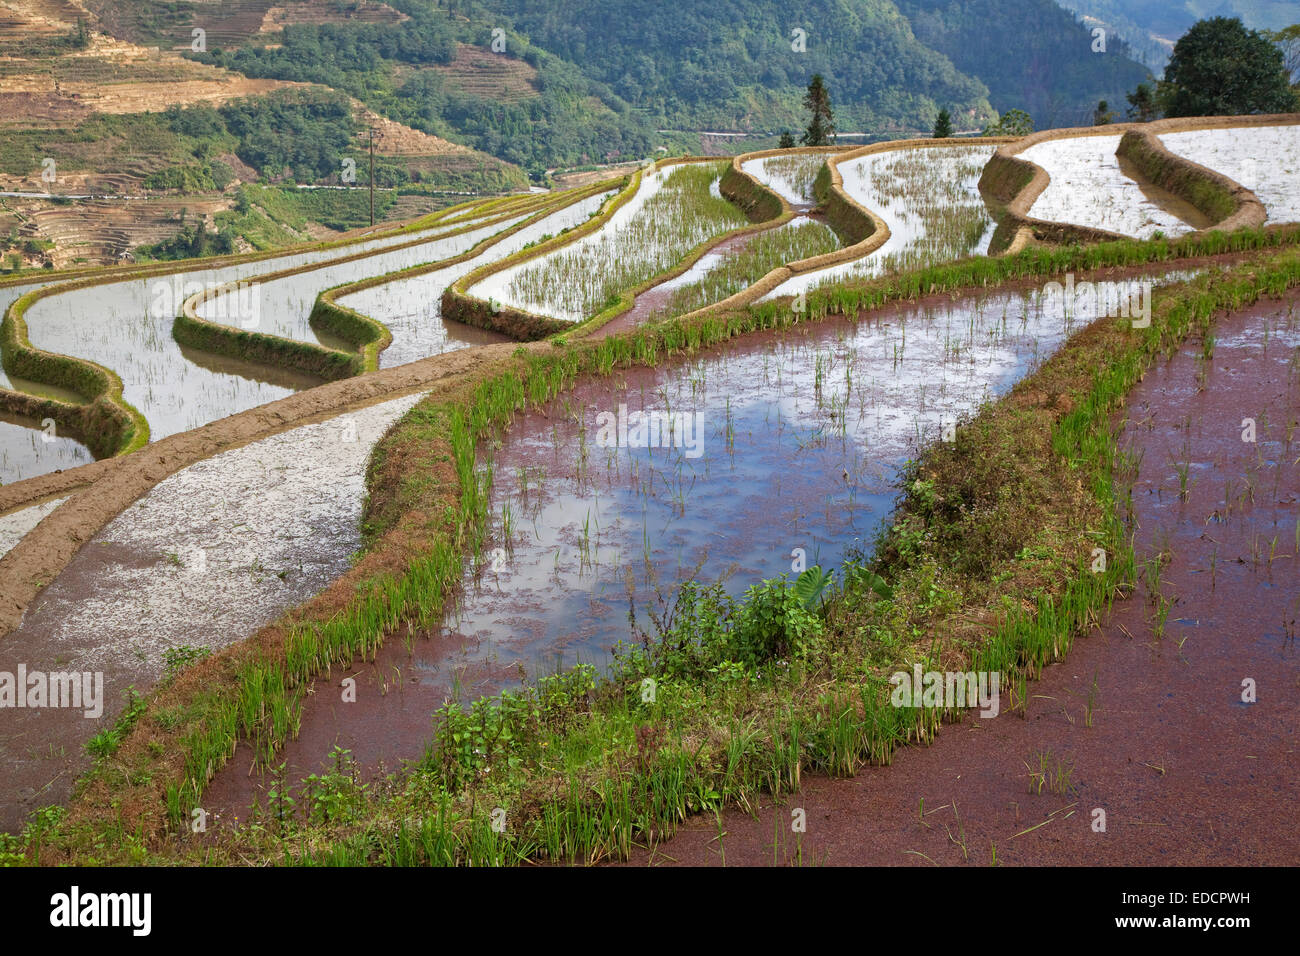 Risaie a terrazze coperte in rosso di lenticchie d'acqua su una collina nei pressi di Xinjie nel quartiere Yuangyang, nella provincia dello Yunnan in Cina Foto Stock